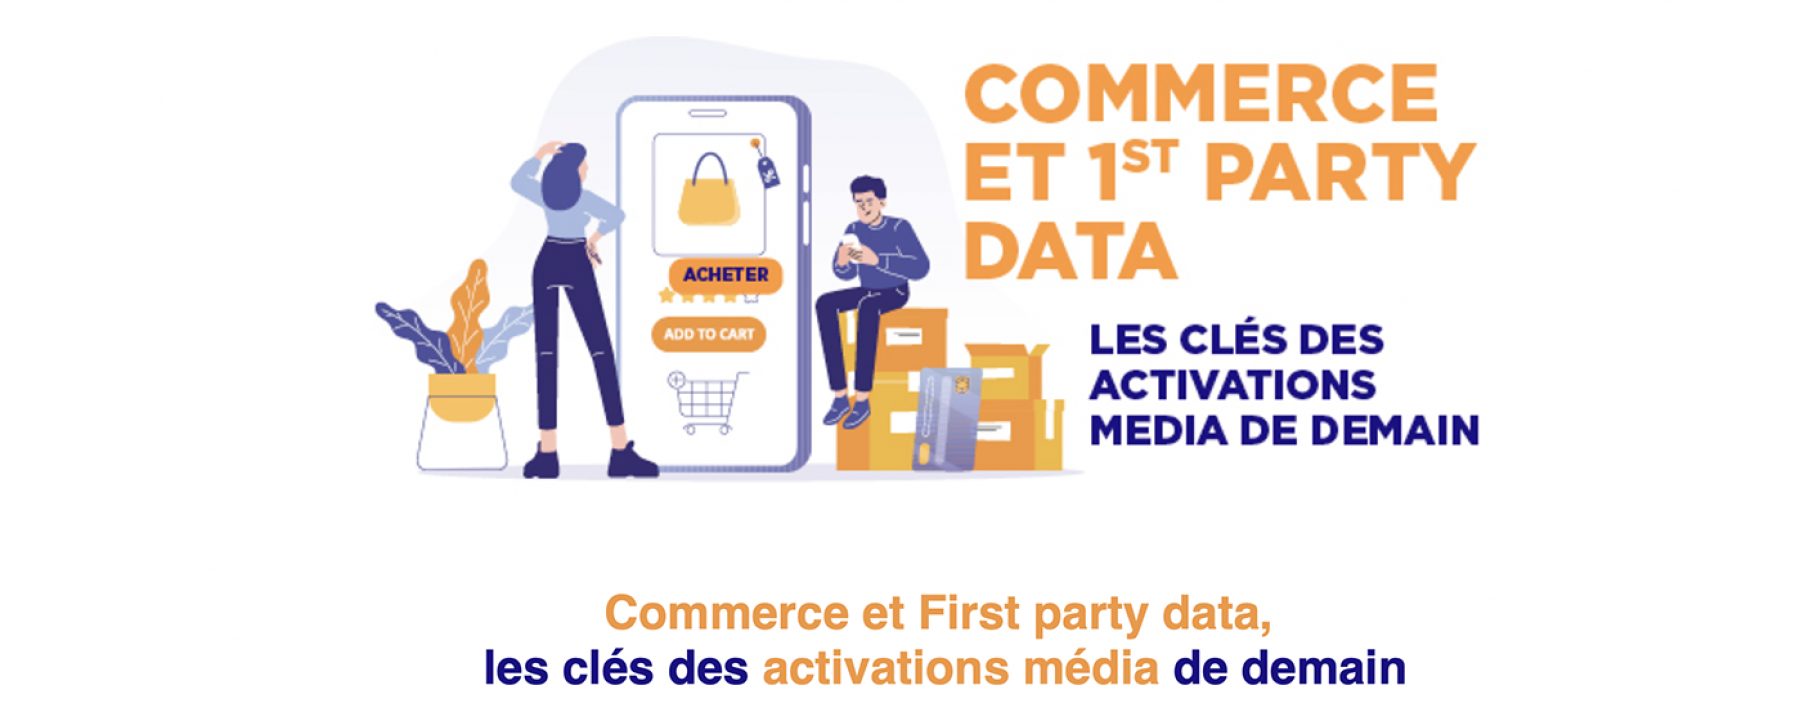 Commerce et 1st party data, les clés des activations media de demain, organisé par Stratégies et Criteo le 11 mai 2021